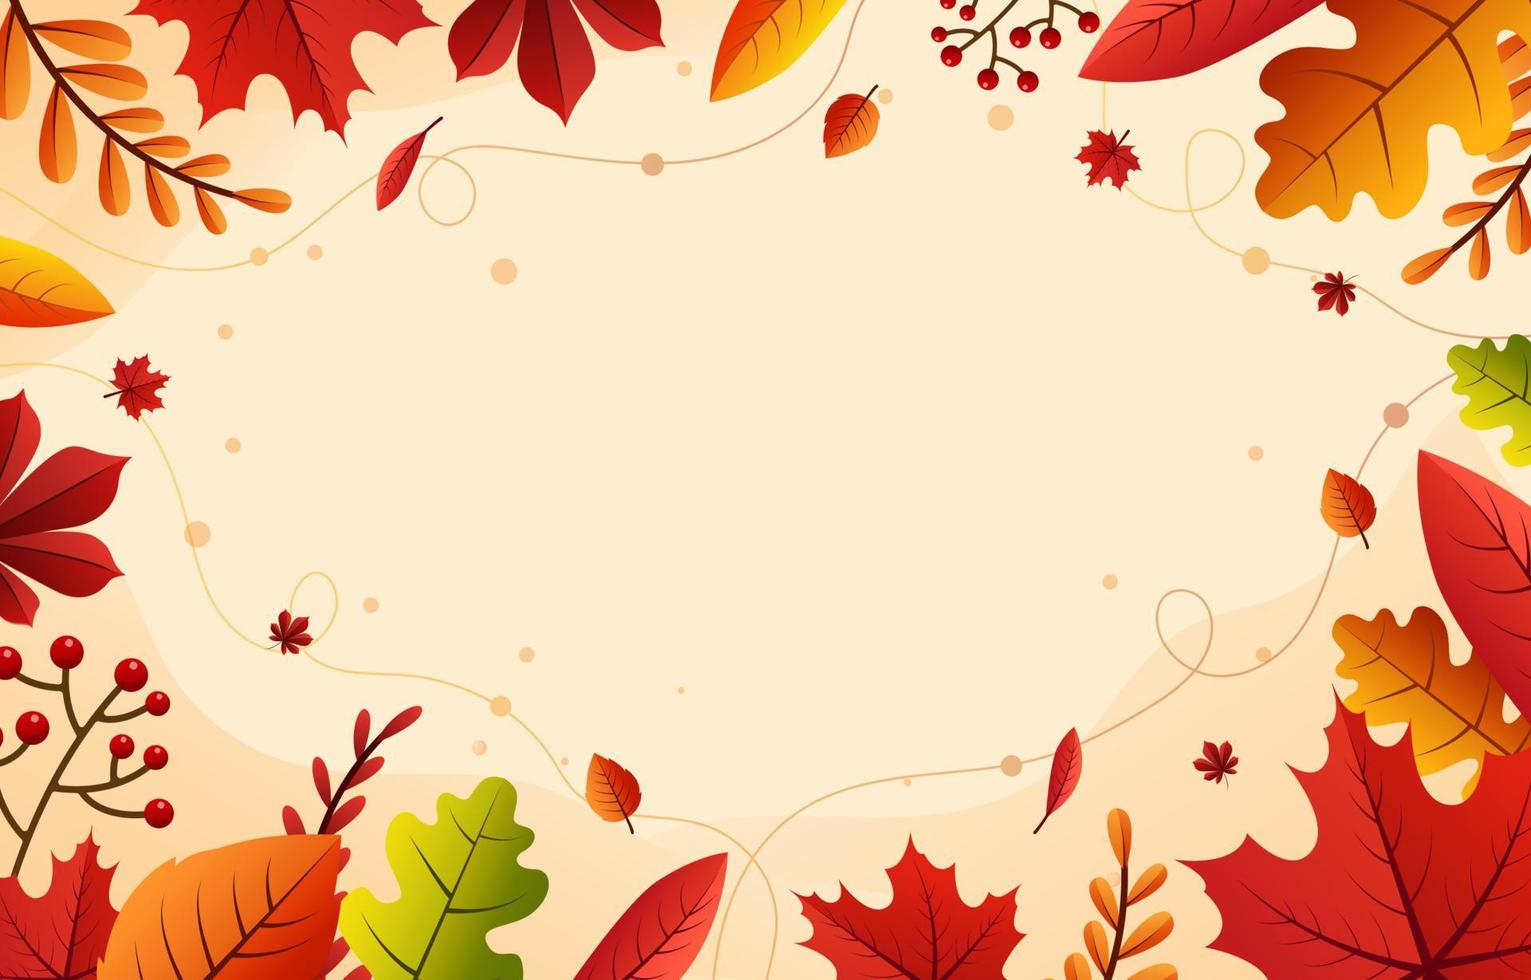 Herbstlaub Hintergrund vektor